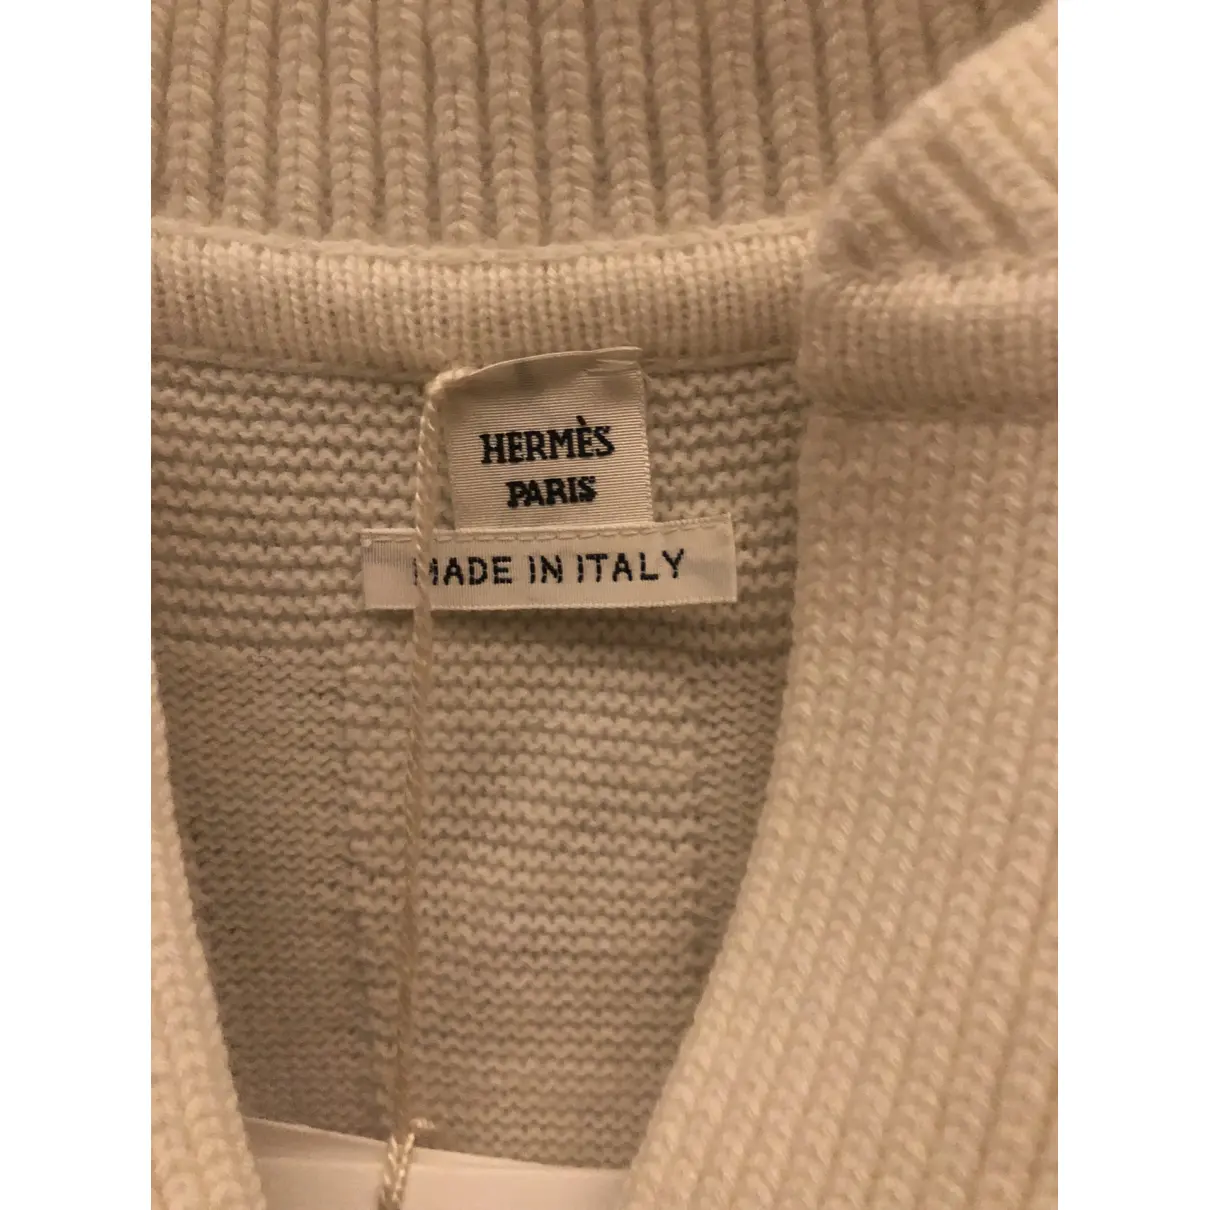 Buy Hermès Wool cardigan online